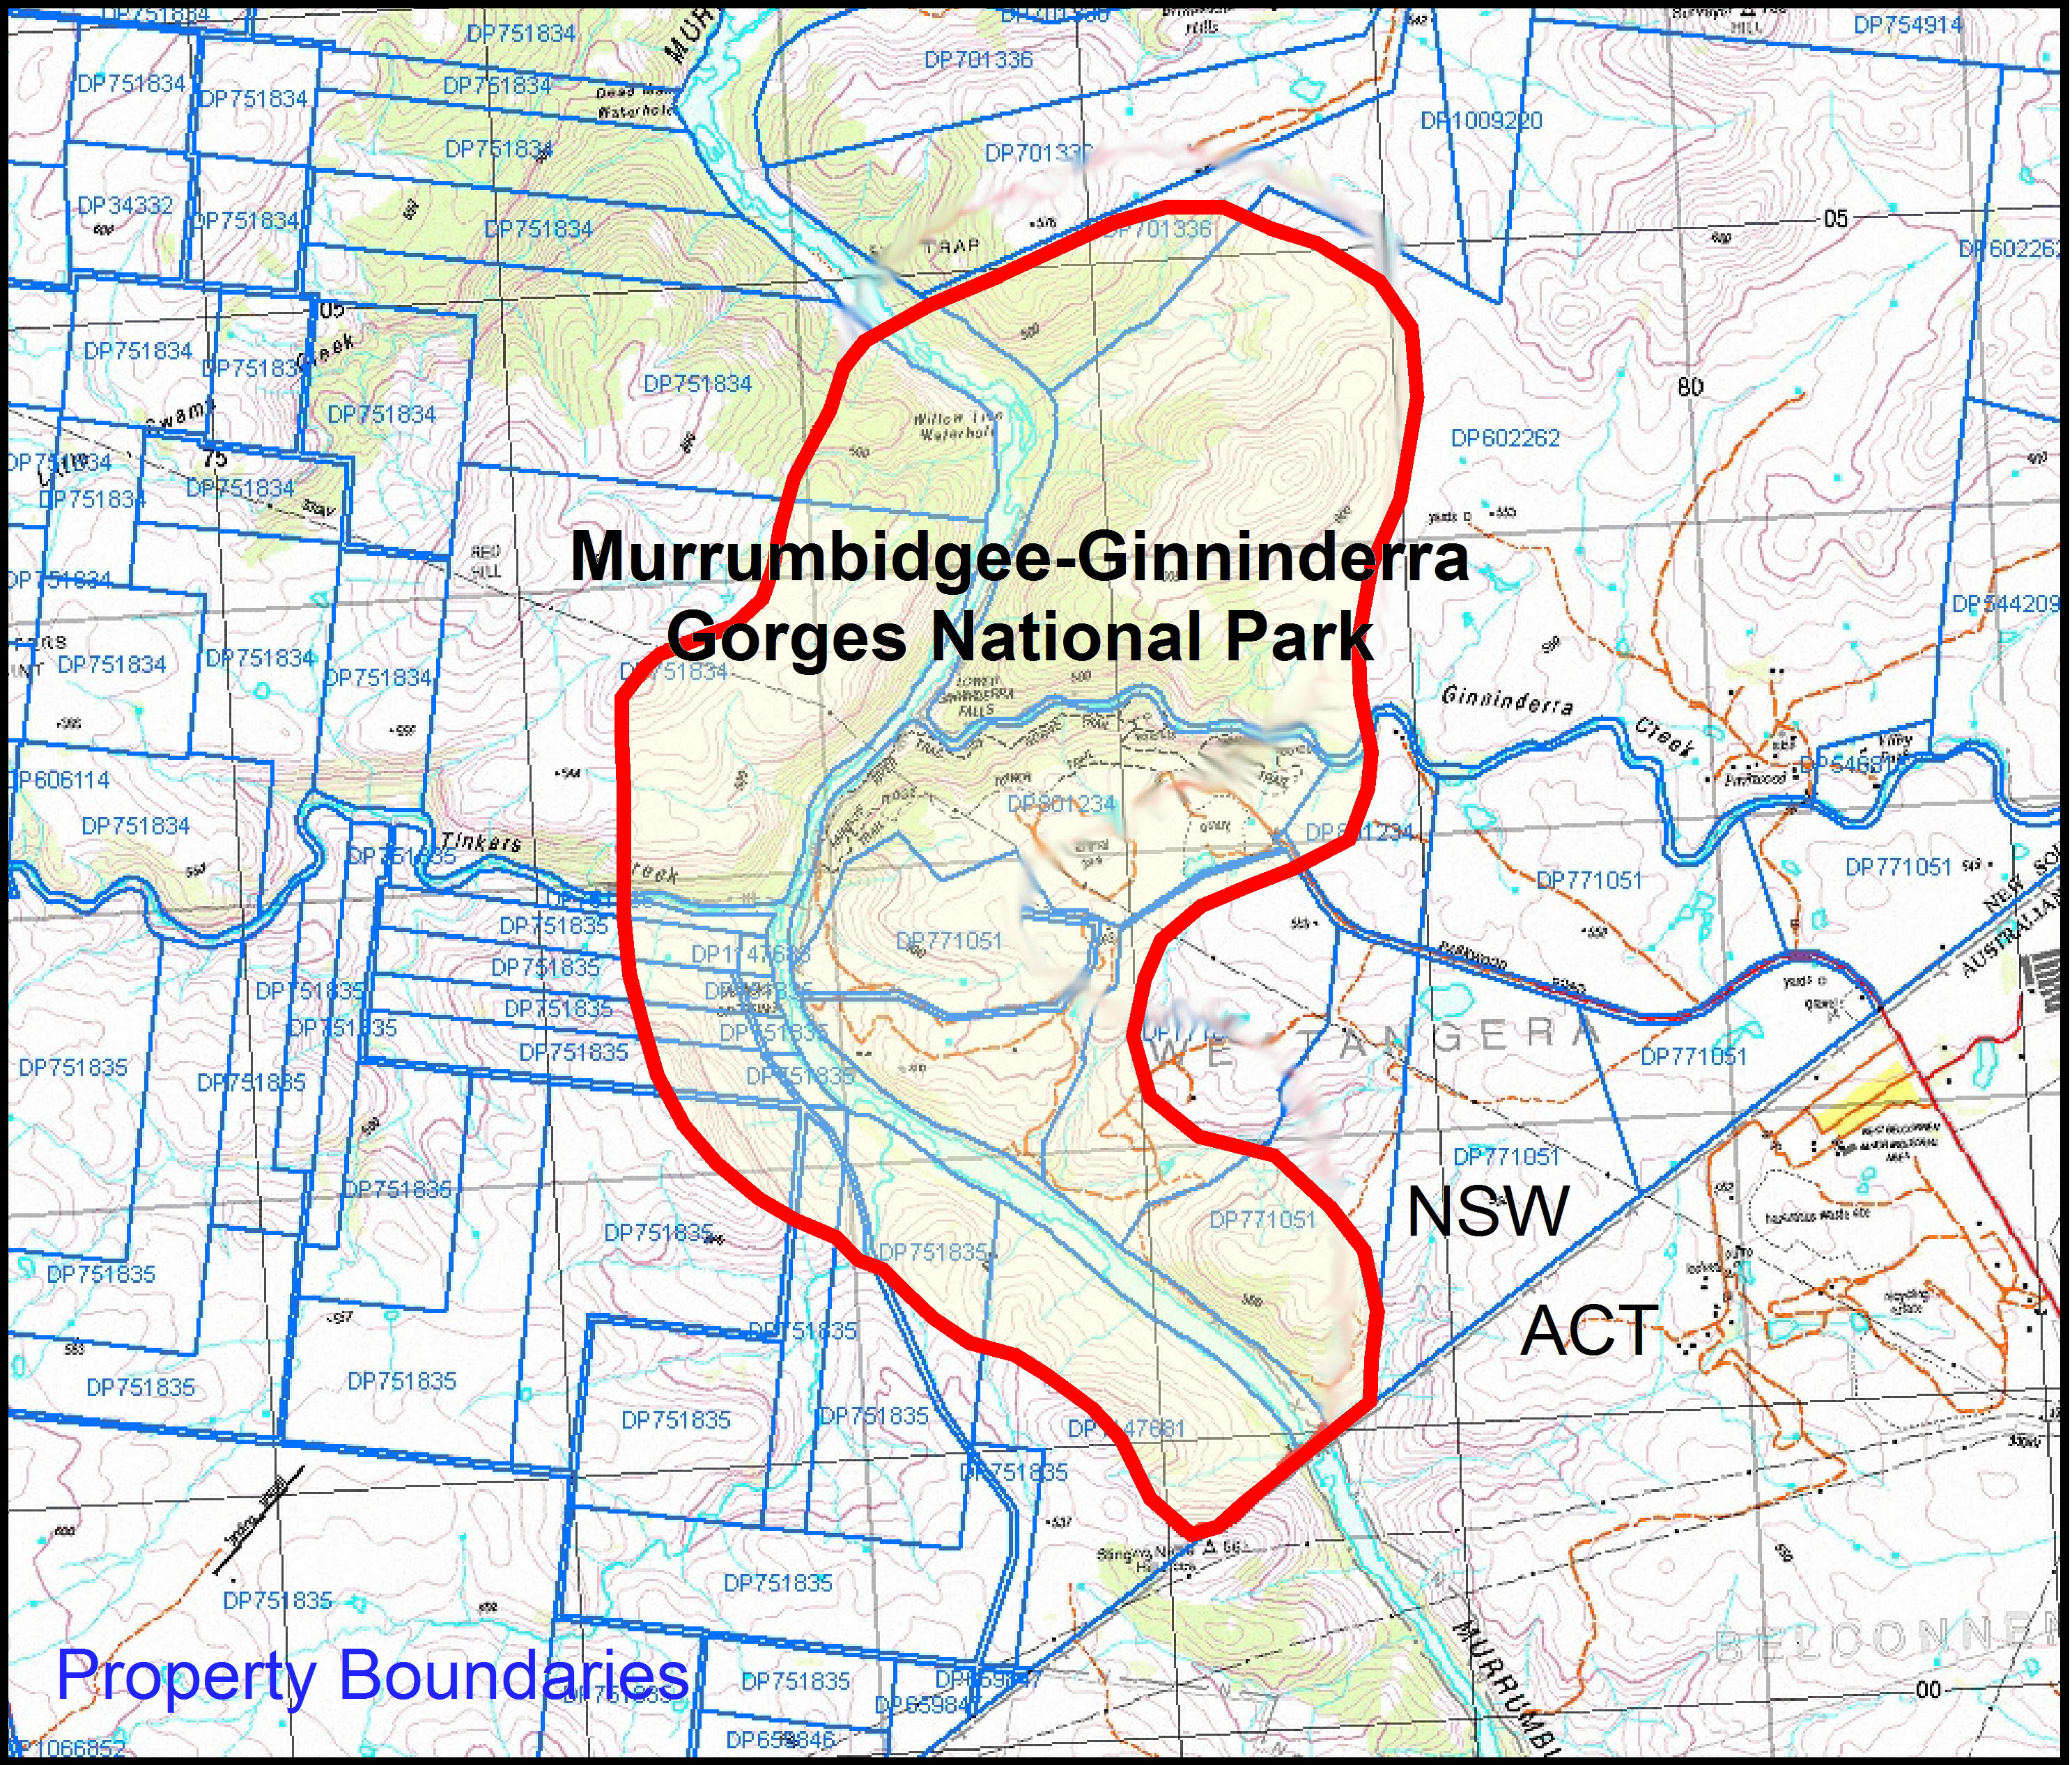 Land ownership boundaries